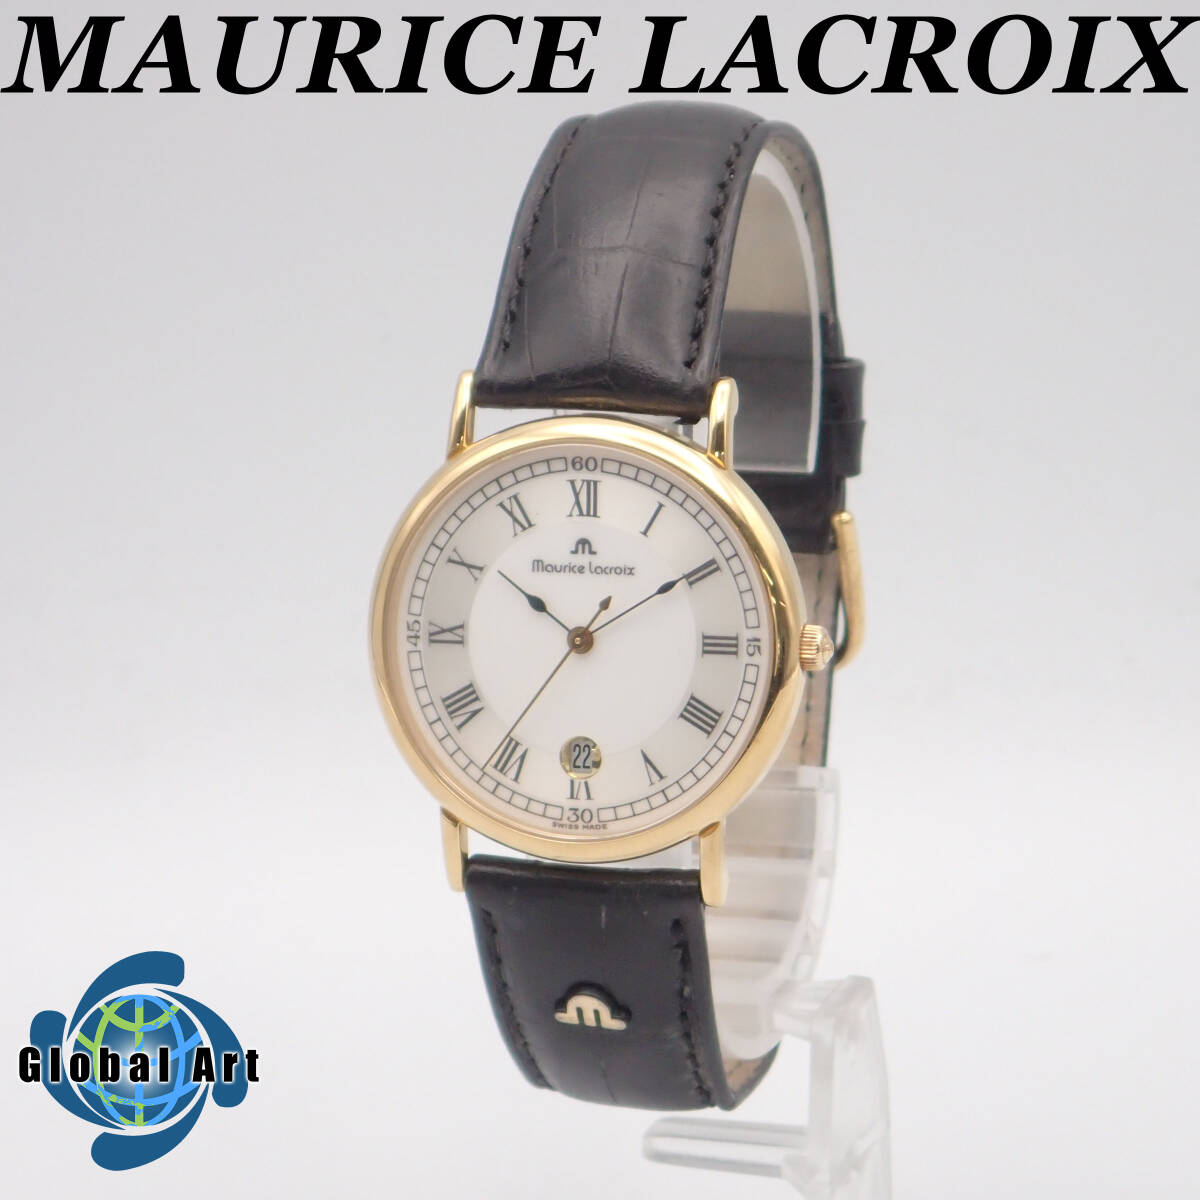 え03302/MAURICE LACROIX モーリスラクロア/クオーツ/メンズ腕時計/ローマン/文字盤 シルバー/69686/ジャンクの画像1